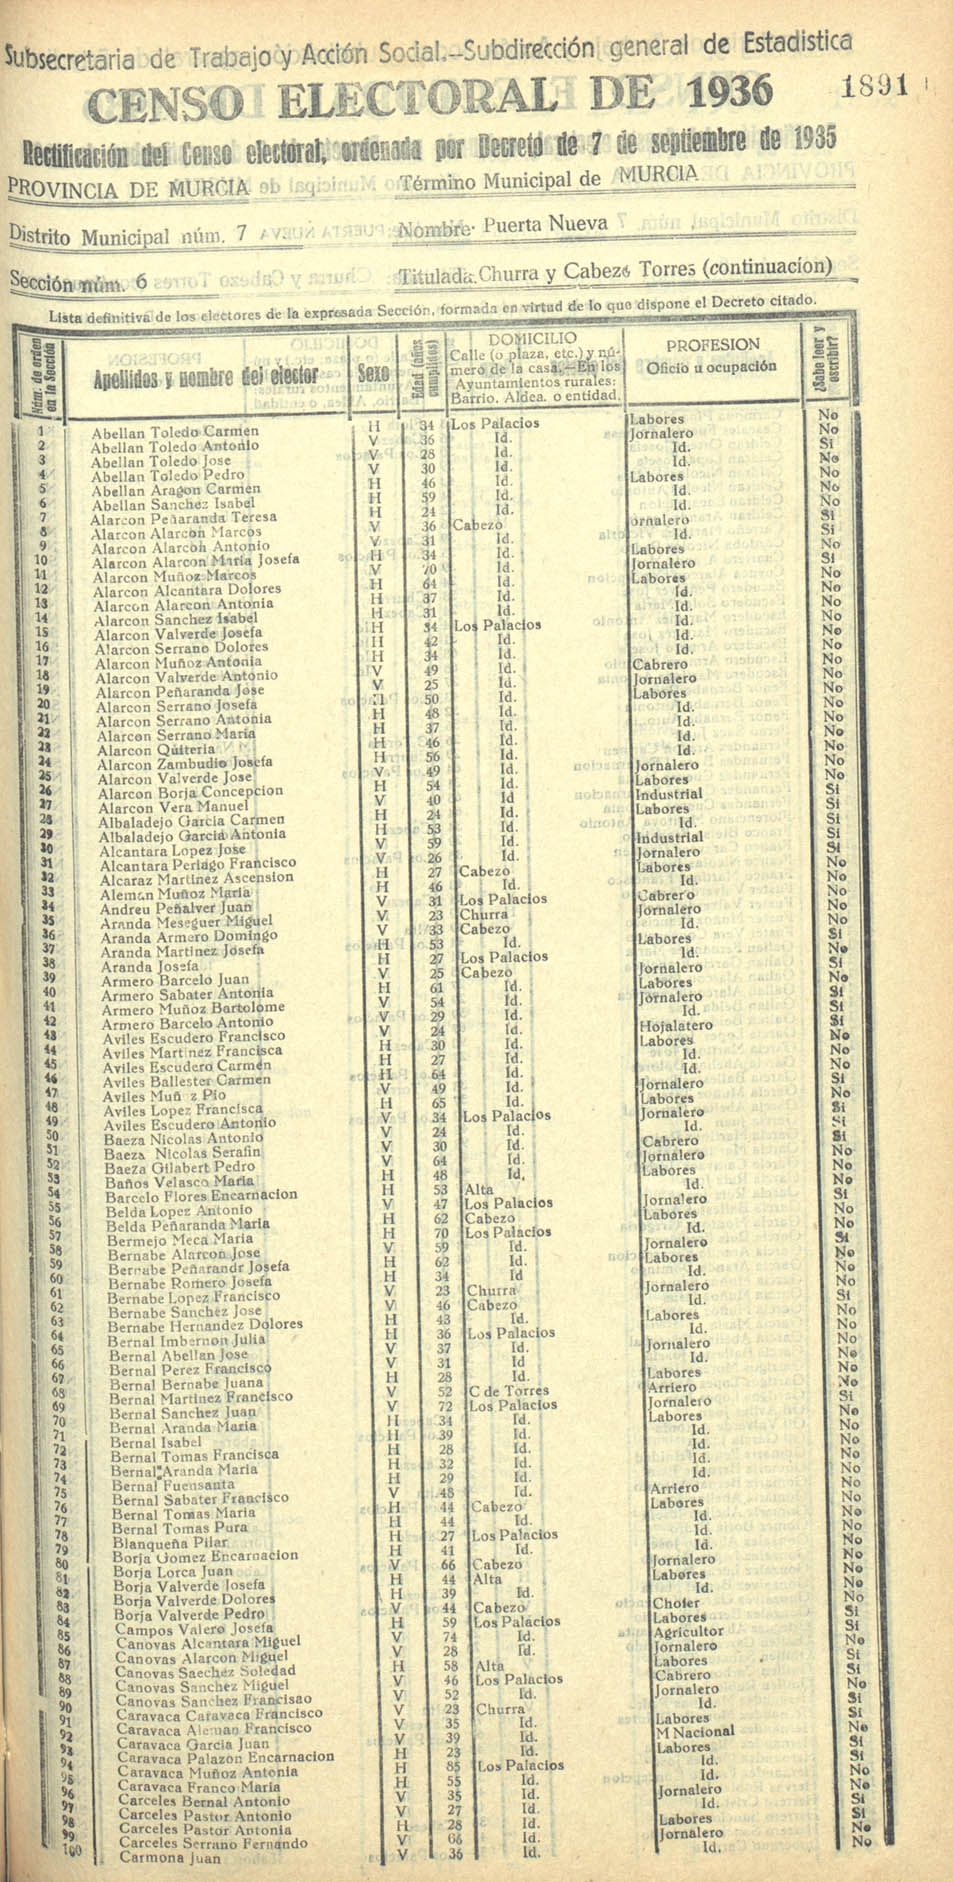 Censo electoral provincial de 1936. Murcia. Distrito 7º, Puerta Nueva. Sección 6ª, Churra y Cabezo de Torres (continuación)